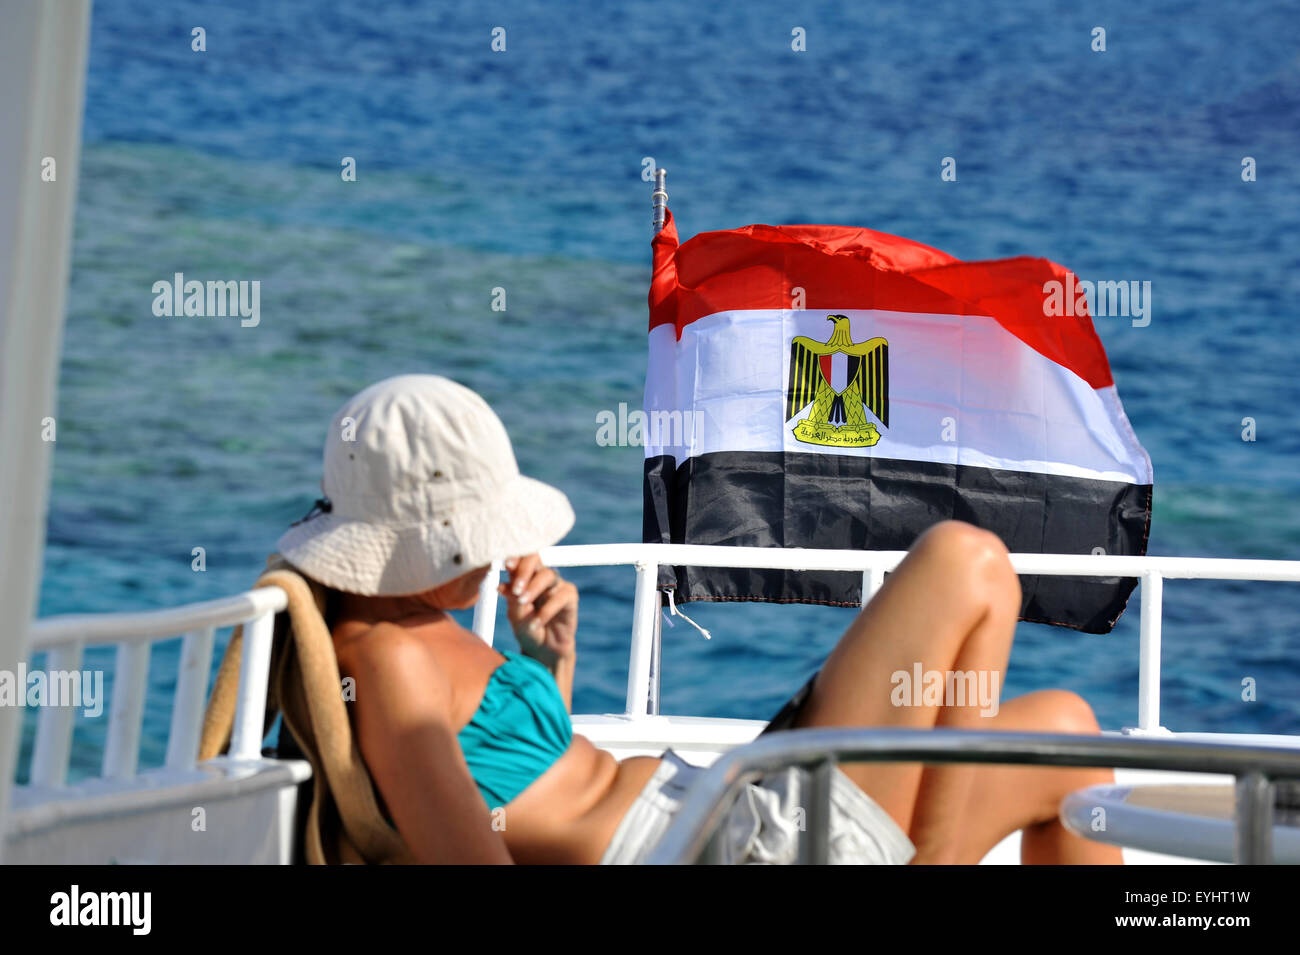 Tourist and flag of Egypt, Red Sea, Sinai, Egypt Stock Photo